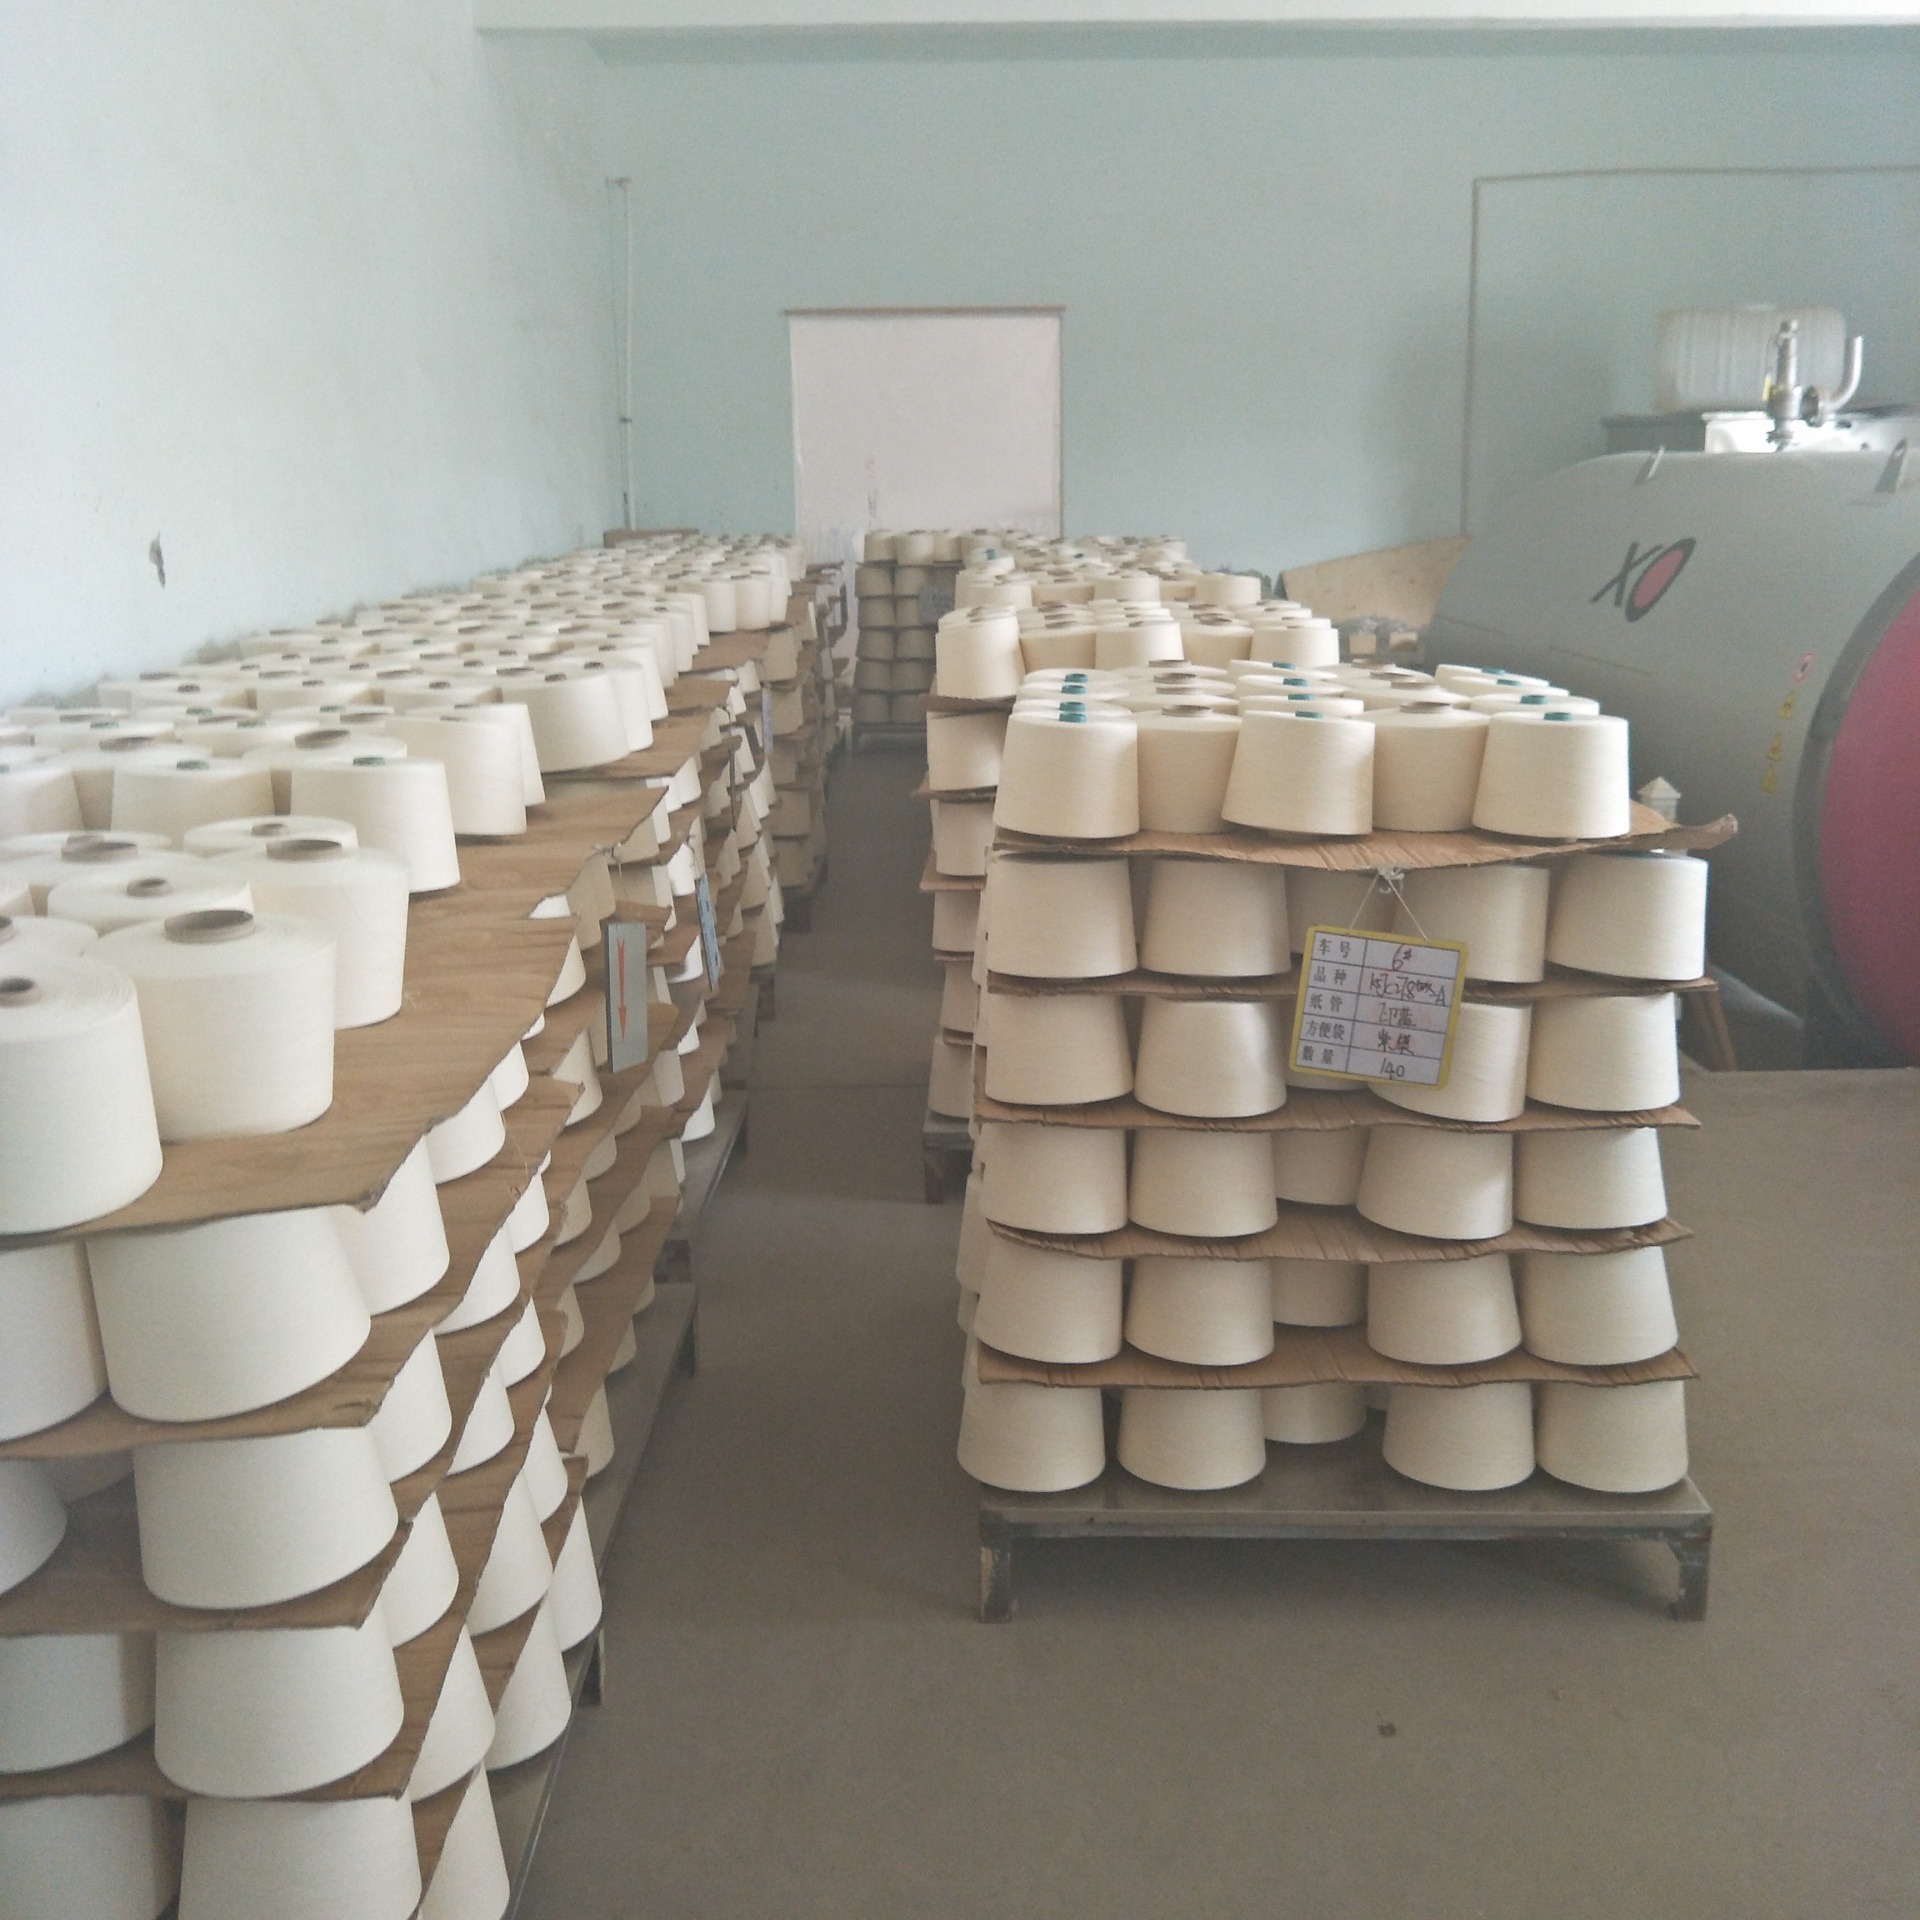 棉纱供应商常年再机生产 埃及长绒棉 GIZA86 45证书吊牌齐全 现货供应